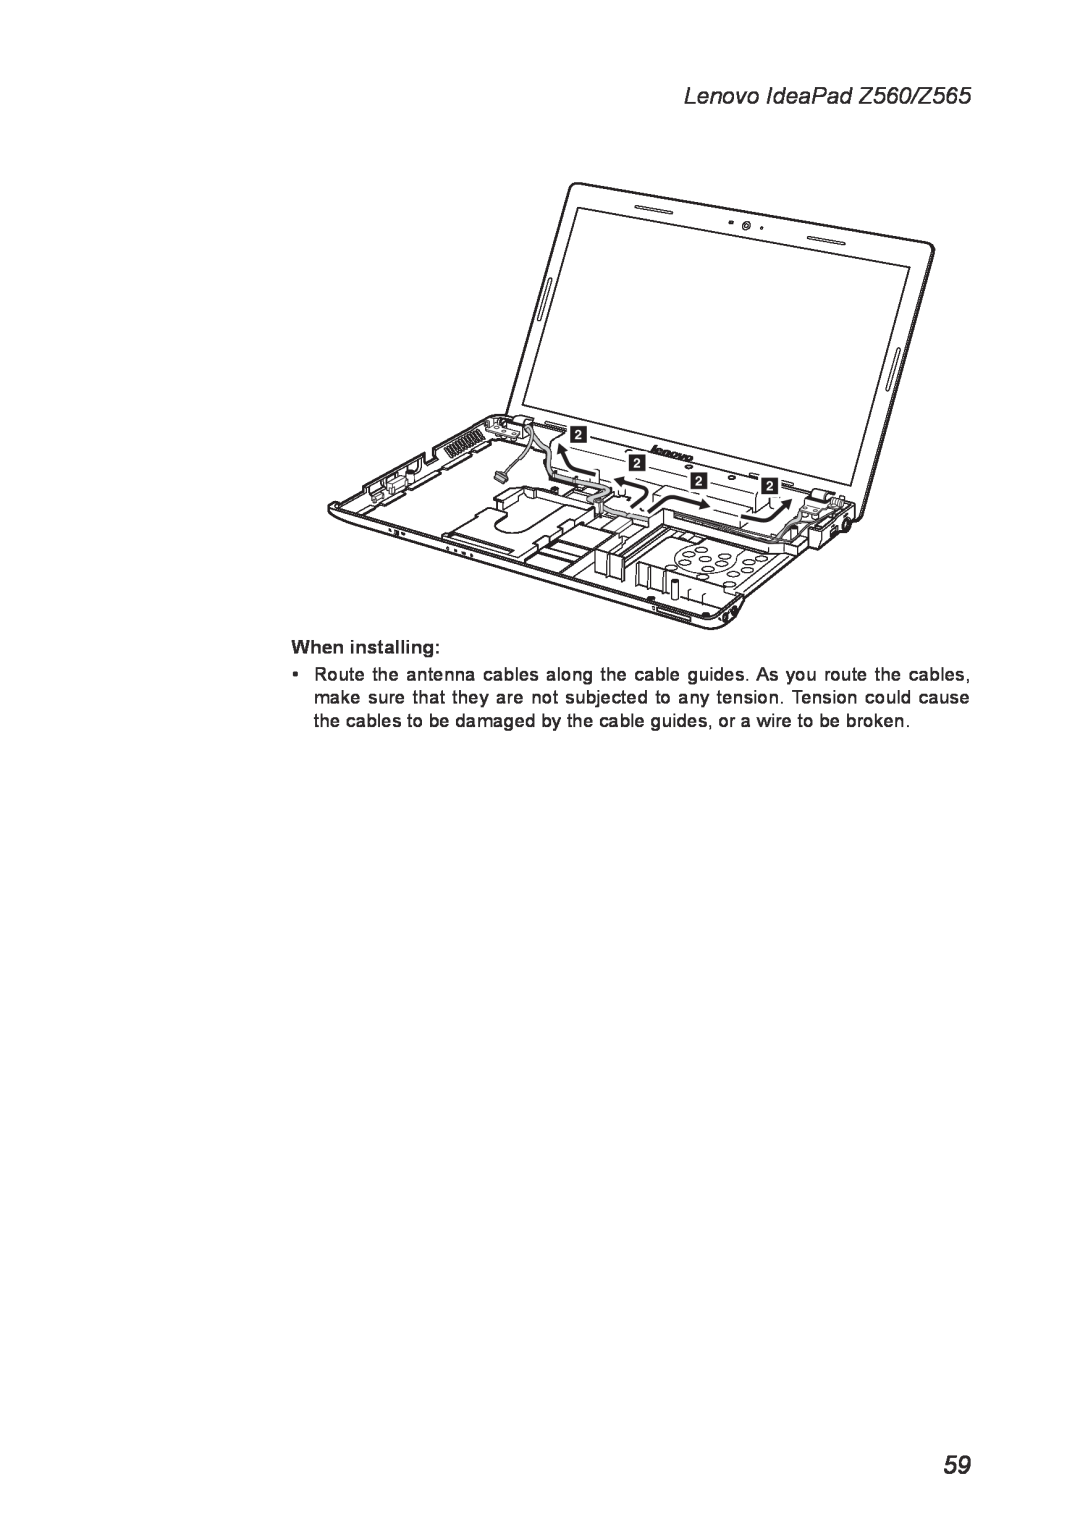 Lenovo manual Lenovo IdeaPad Z560/Z565, When installing 